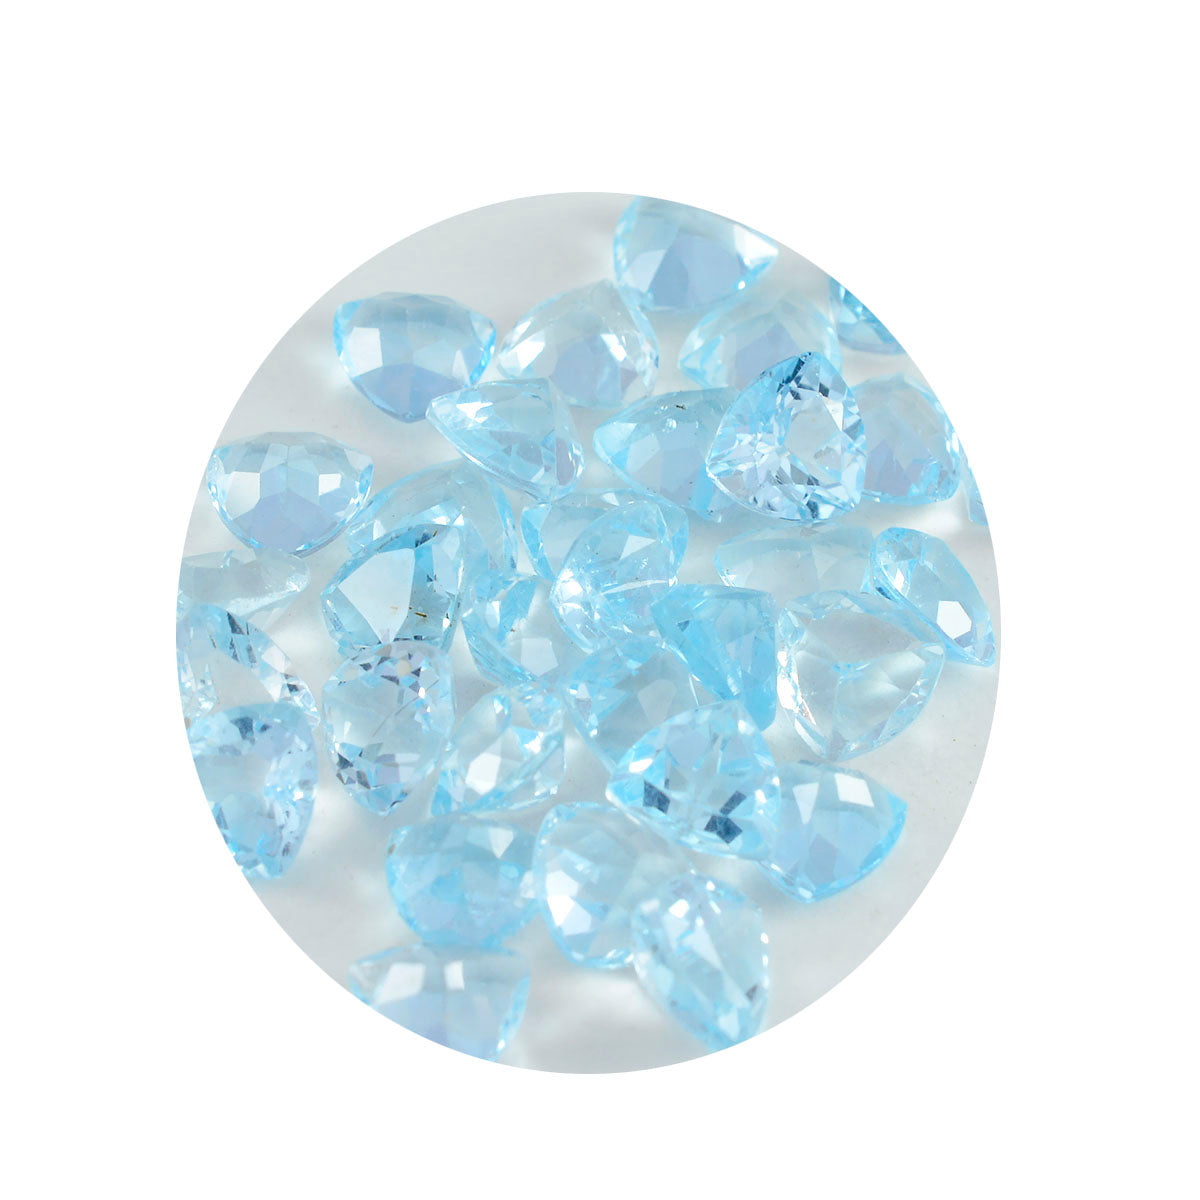 Riyogems 1PC echte blauwe topaas gefacetteerde 5x5 mm biljoen vorm verbazingwekkende kwaliteit edelsteen